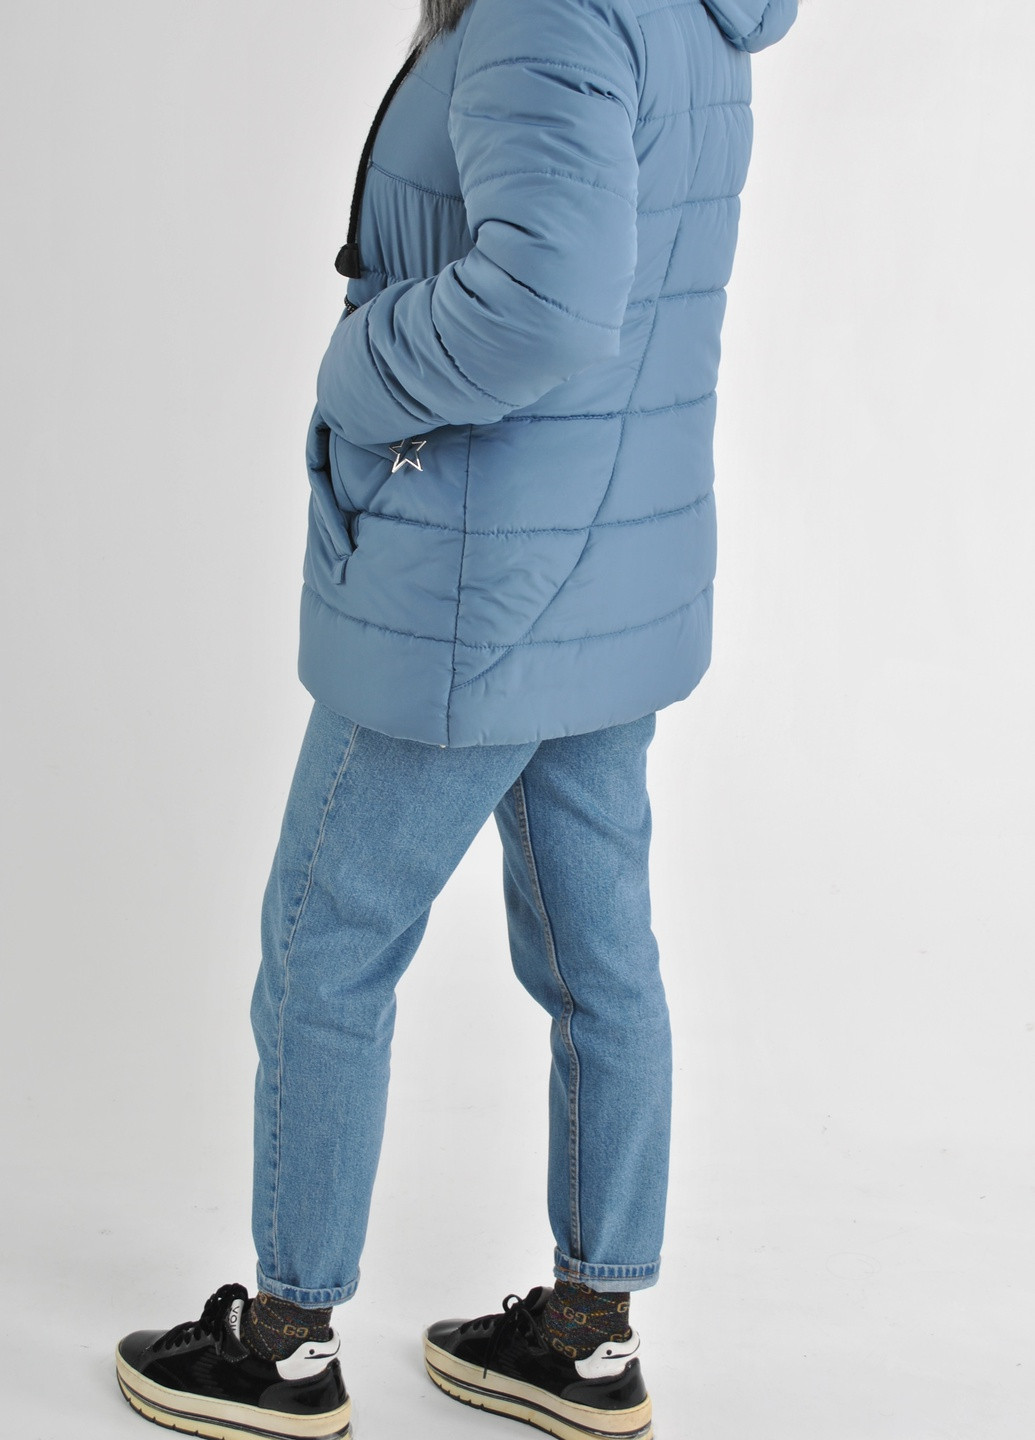 Синяя зимняя зимняя куртка Fashion Club